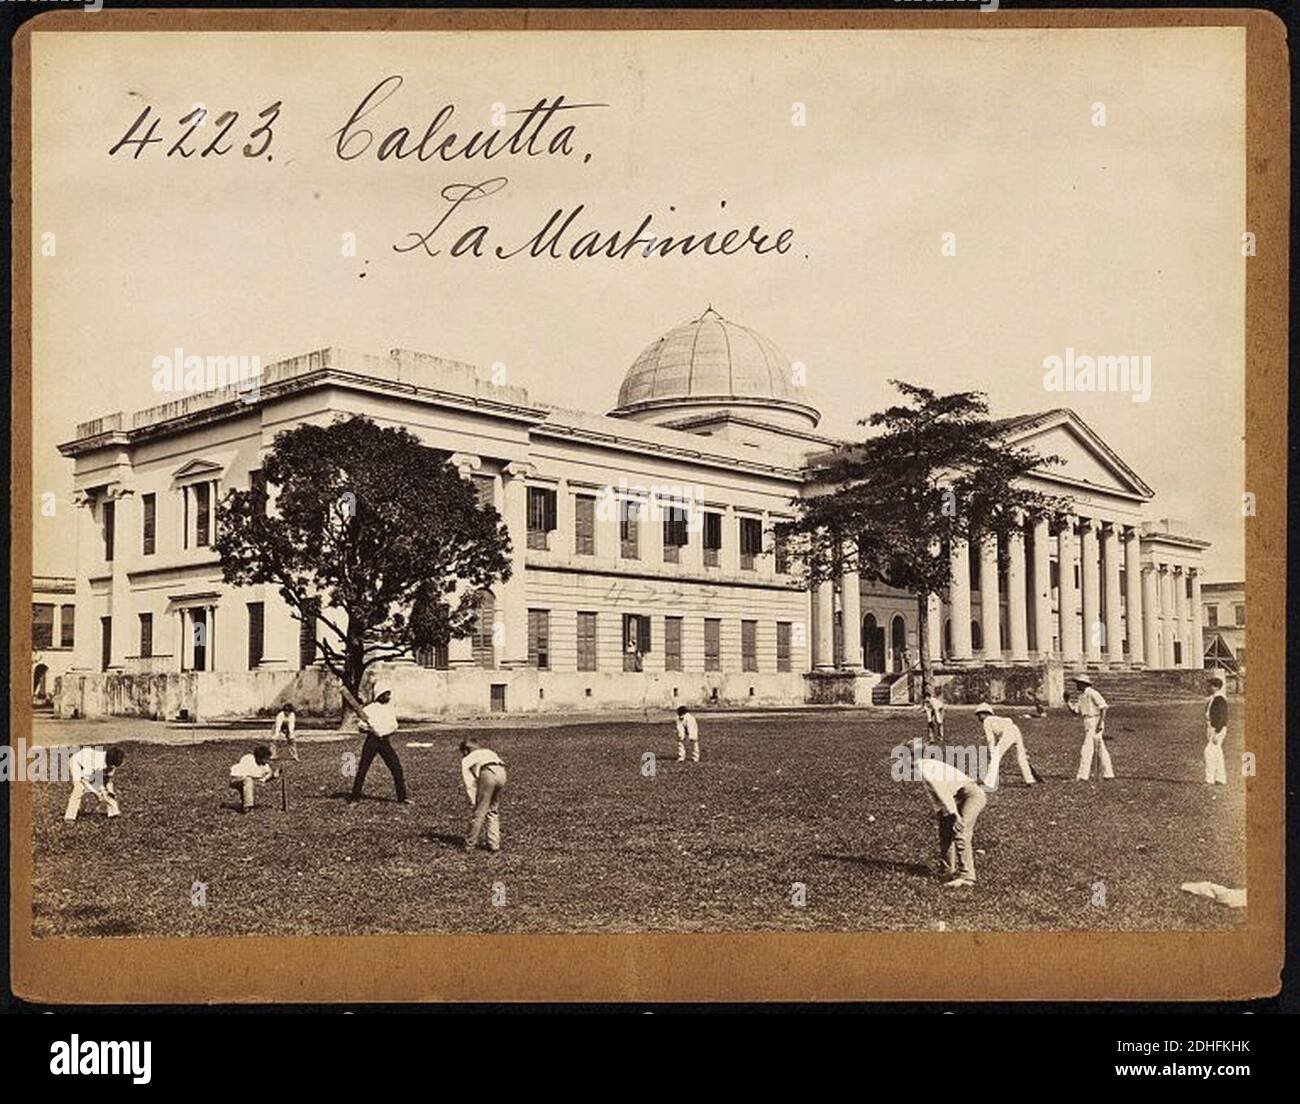 La Martiniere Calcutta by Francis Frith. Stock Photo